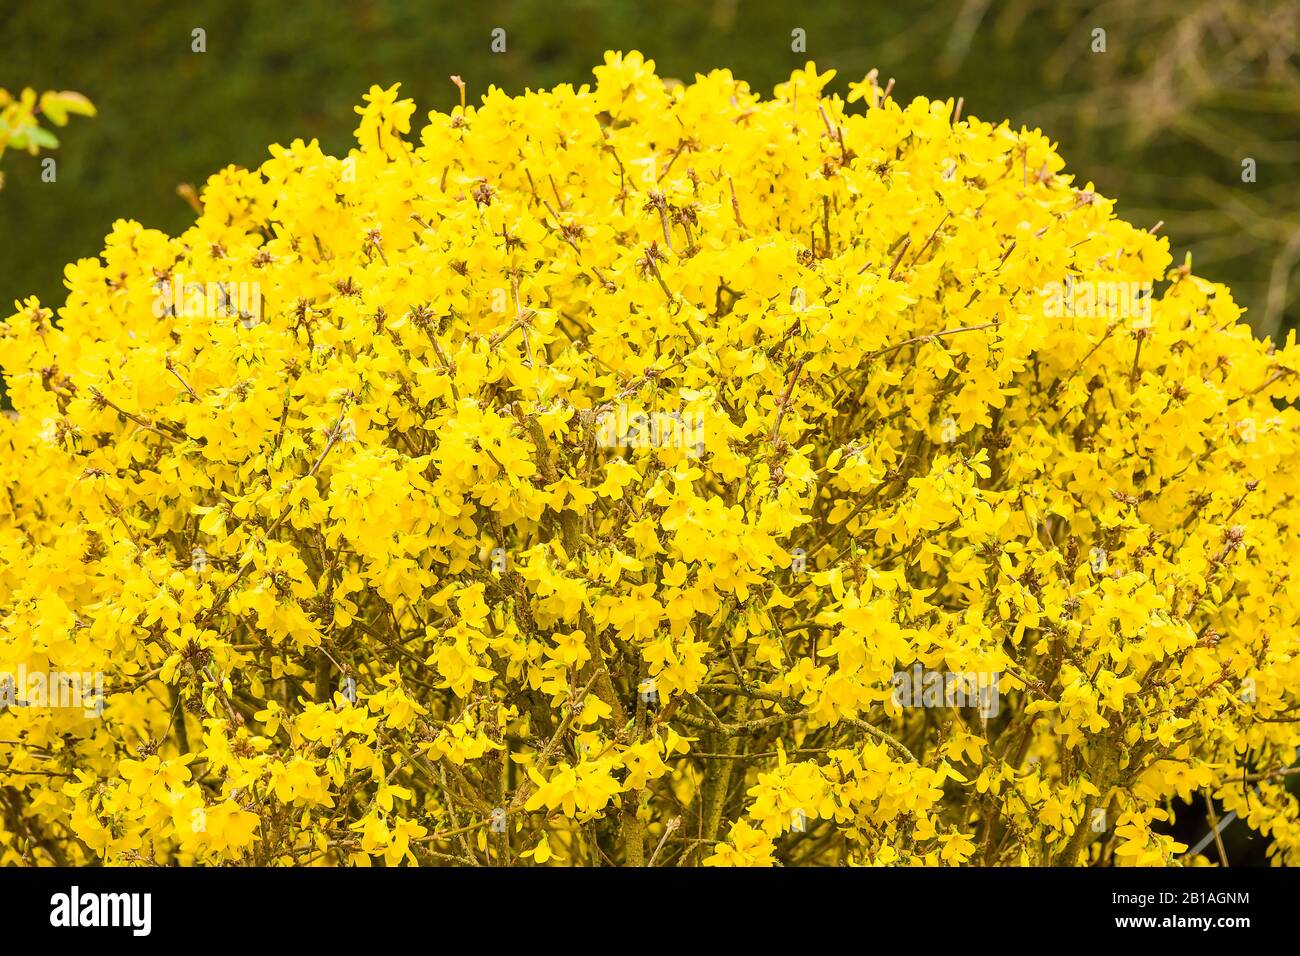 Una cupola dorata di fiori gialli luminosi caratterizza questo grazioso arbusto di Forsythia ben sagomato in primavera in un giardino inglese Foto Stock